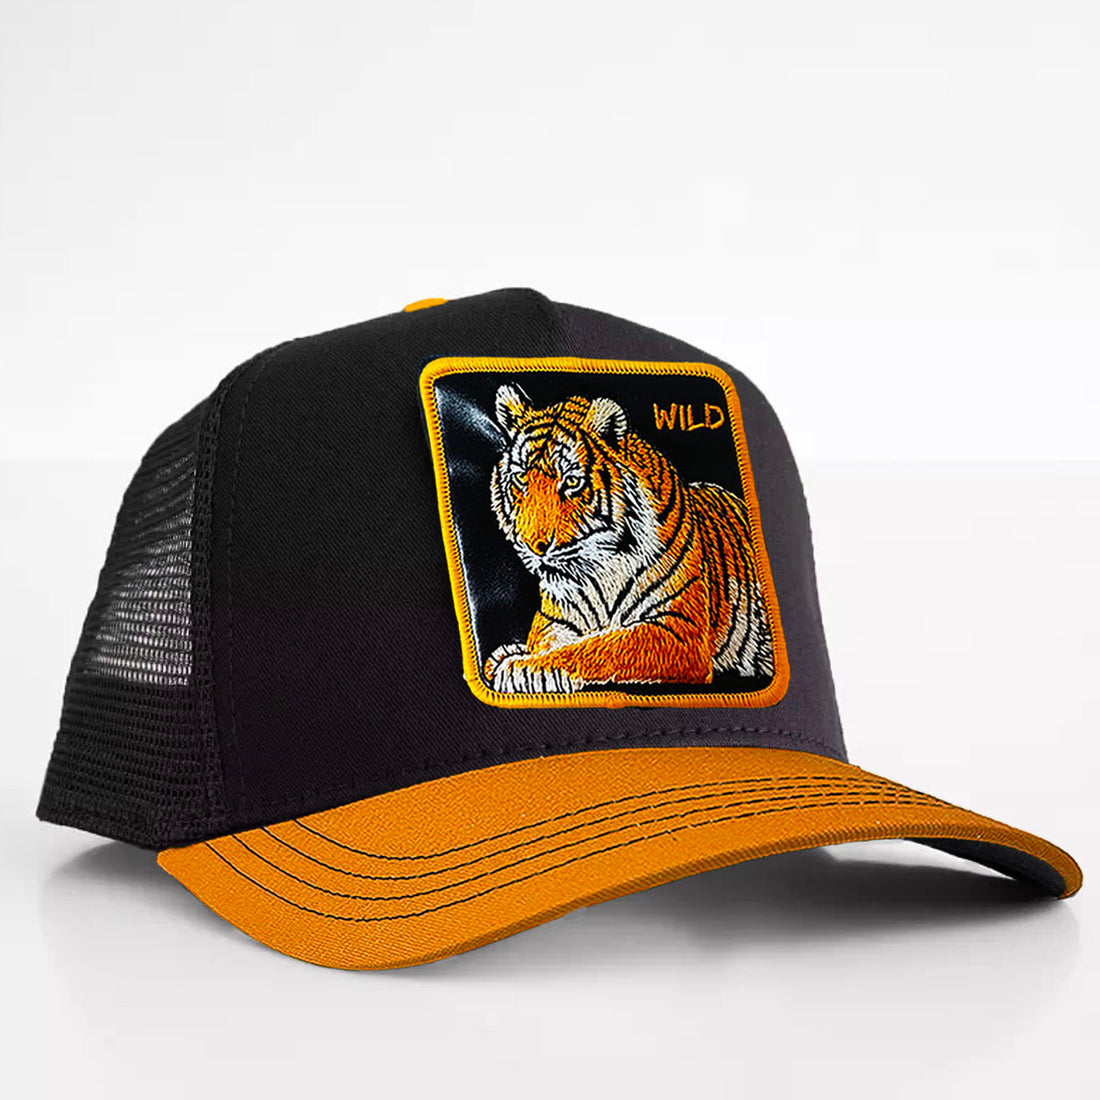 Tiger - "Wild" Trucker Hat